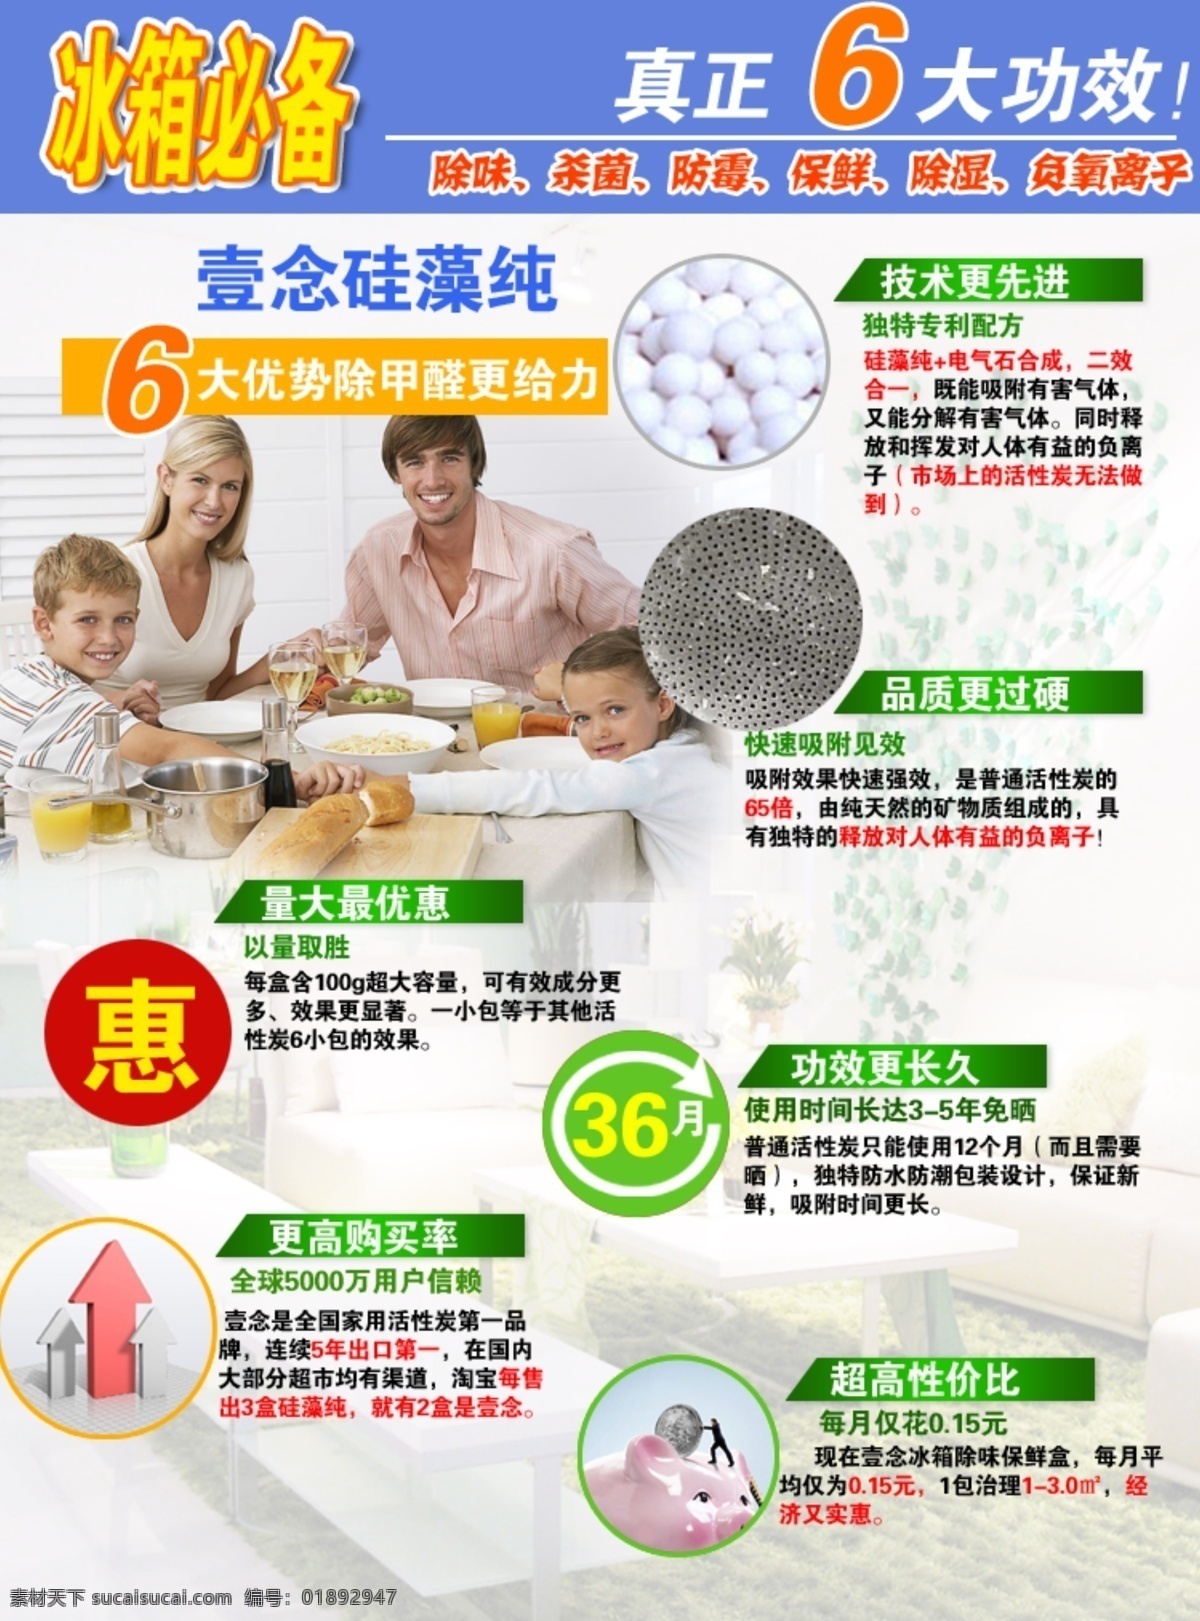 功效 优势 宝贝描述 对比 家庭 健康 介绍 绿色 套餐 特惠 6大功效 原创设计 原创淘宝设计